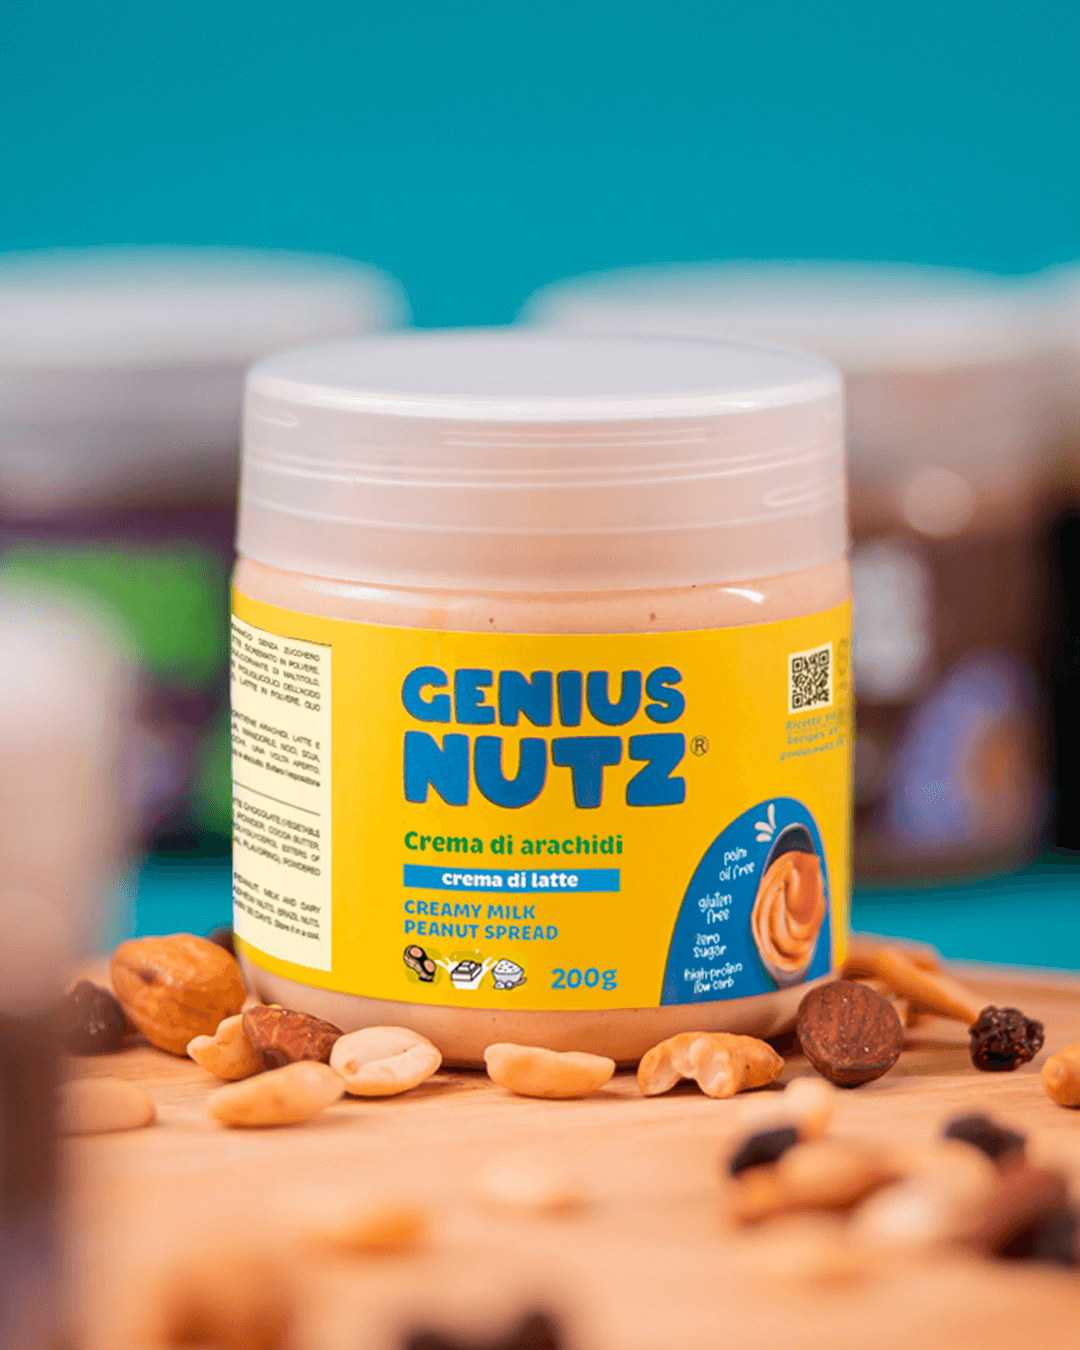 Peanut Spread - Creamy Milk